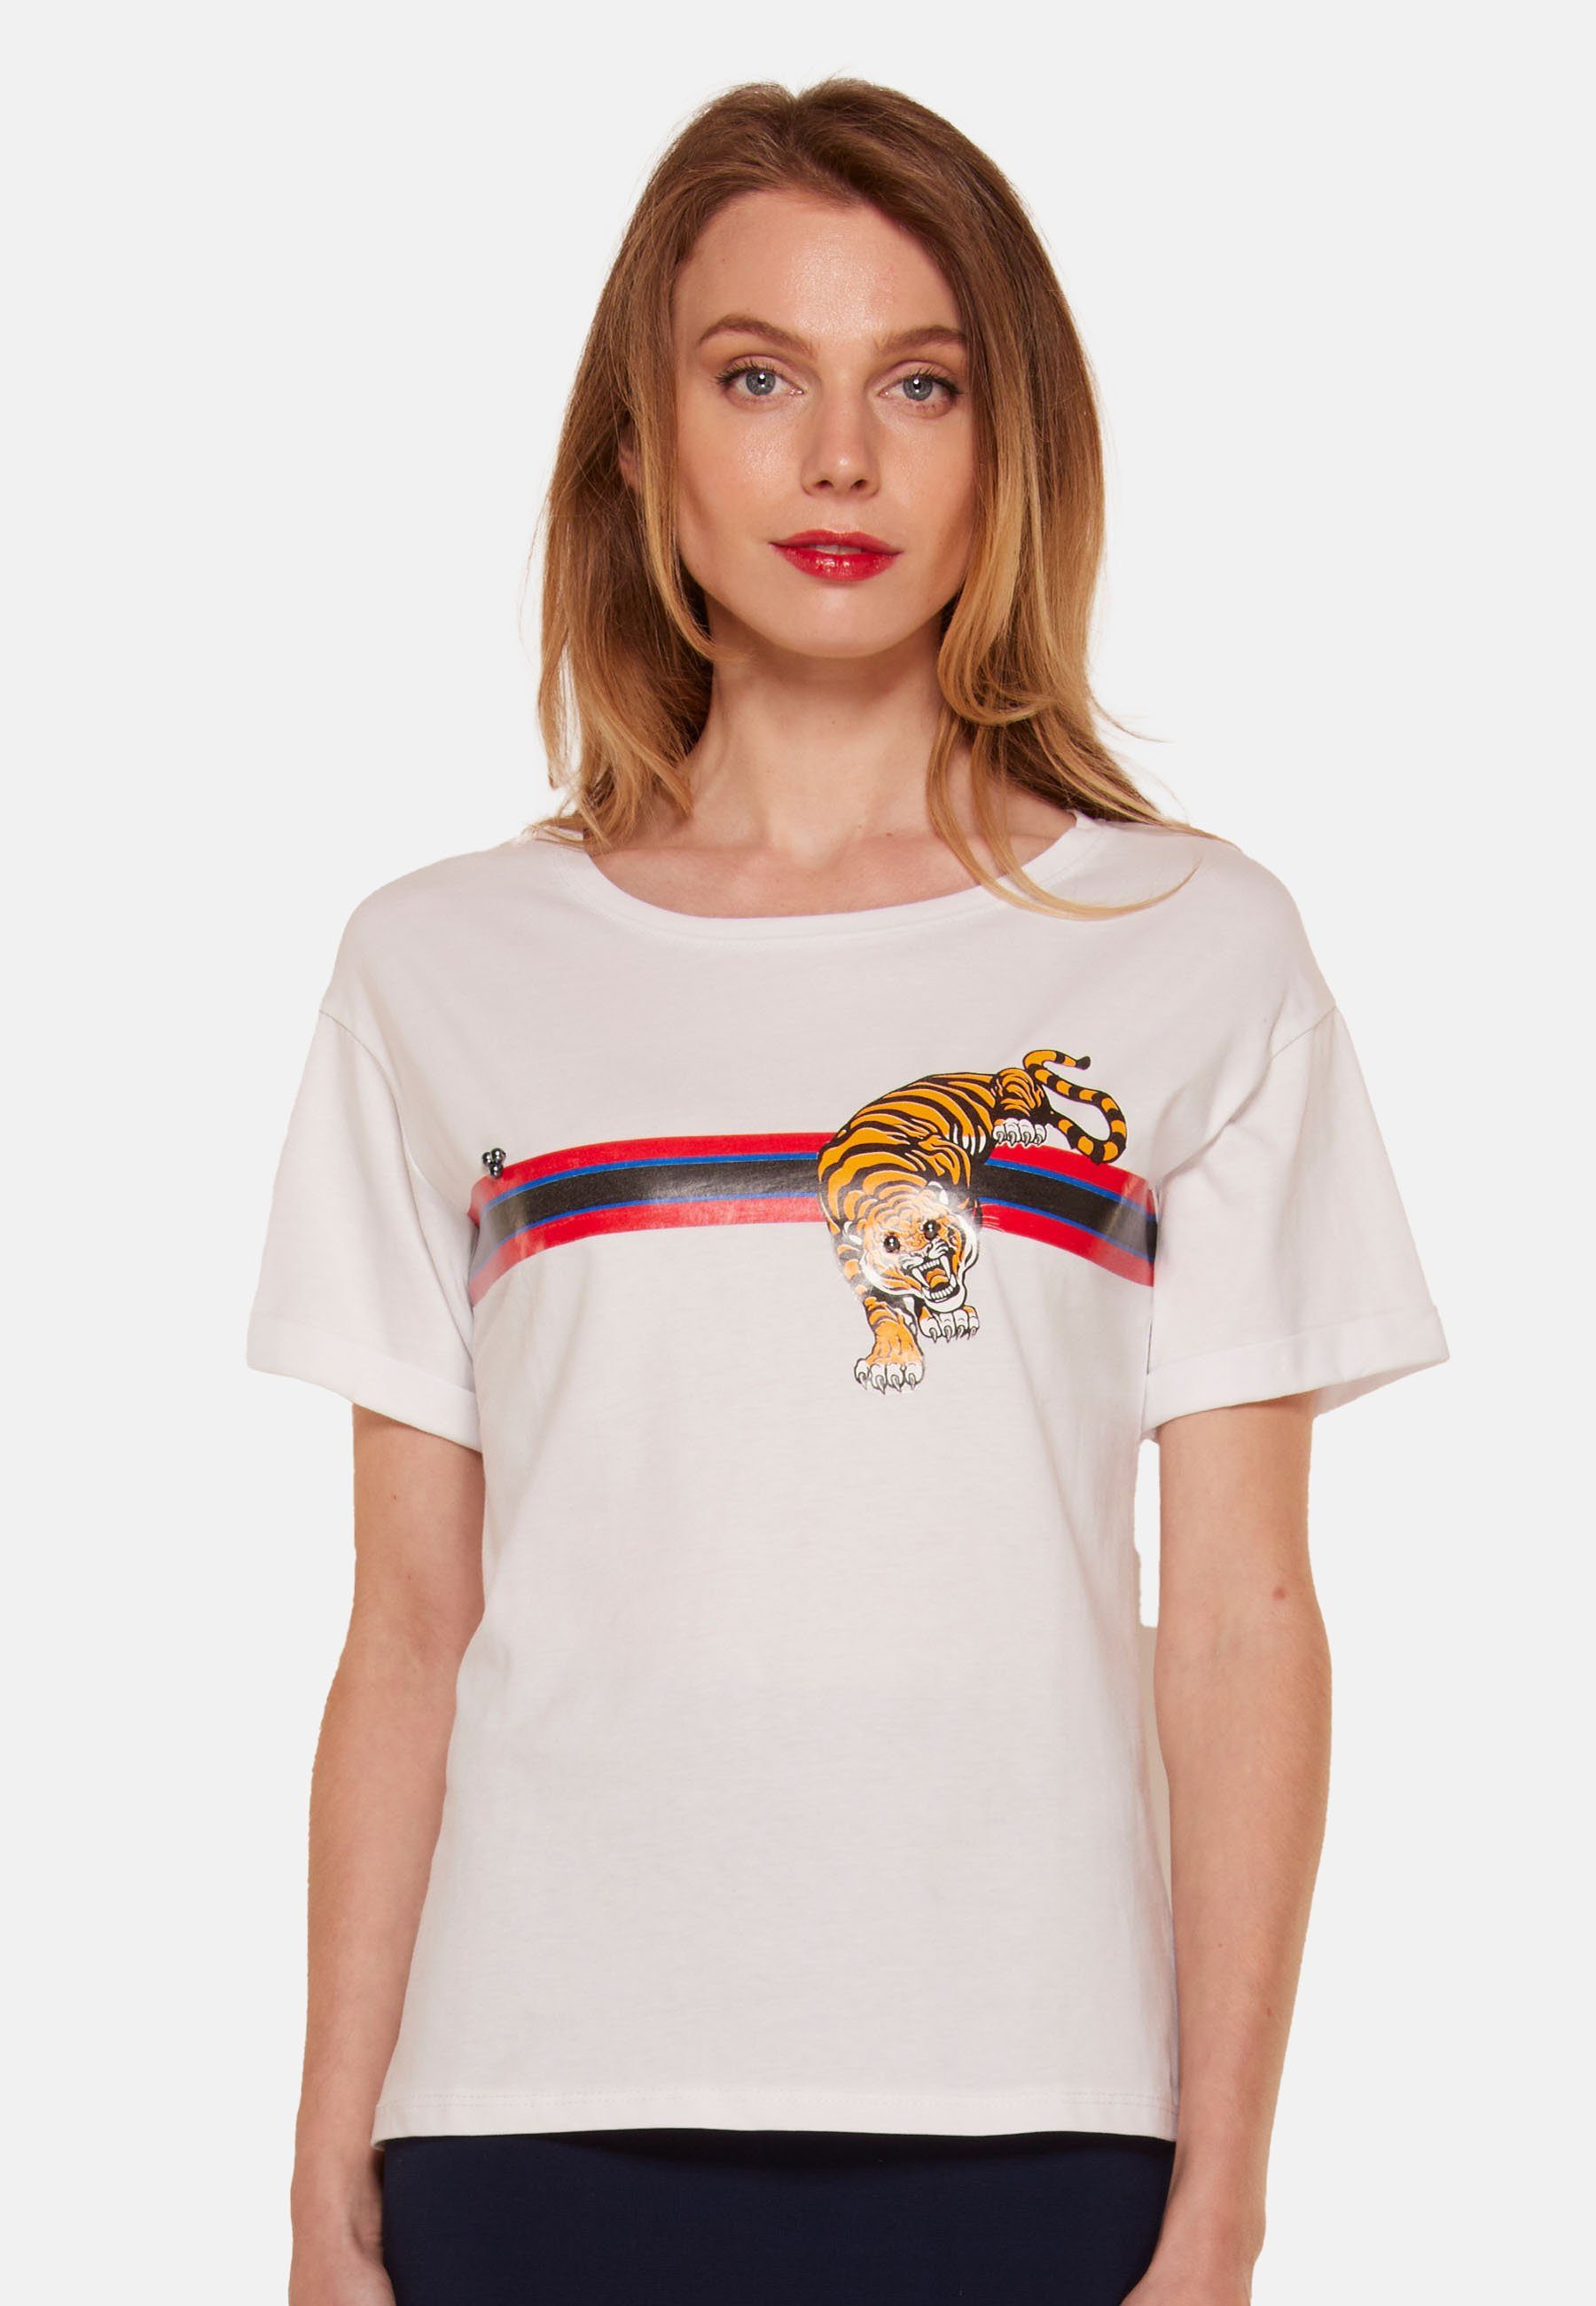 Tooche Print-Shirt T-shirt Tiger weiss